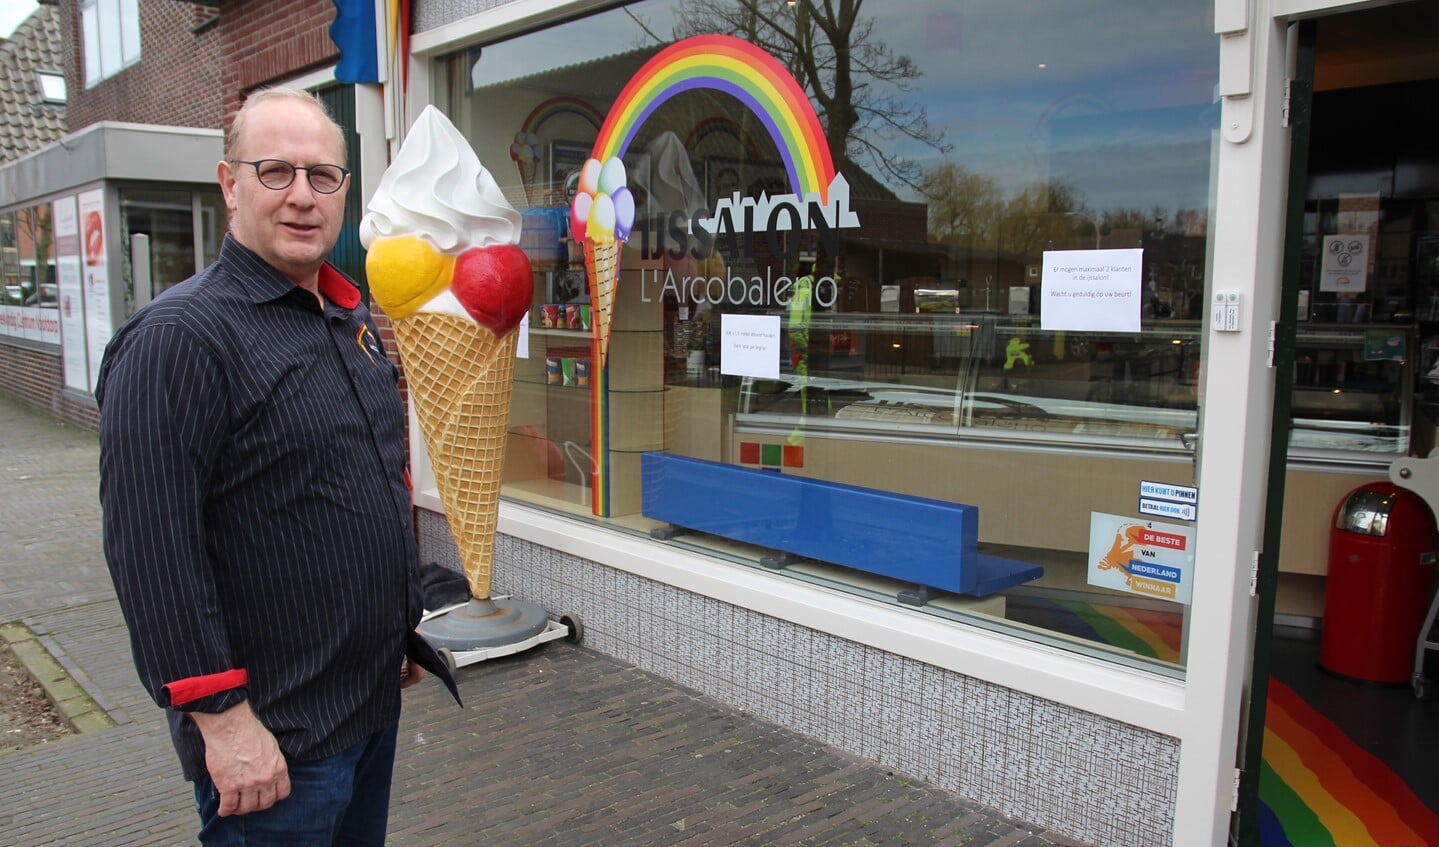 Waar nodig steunt de gemeente ondernemers. John Vonk van de ijssalon in de Dorpsstraat in Nootdorp redt zich wel. IJs is heerlijk ‘troostvoer’ in barre tijden!